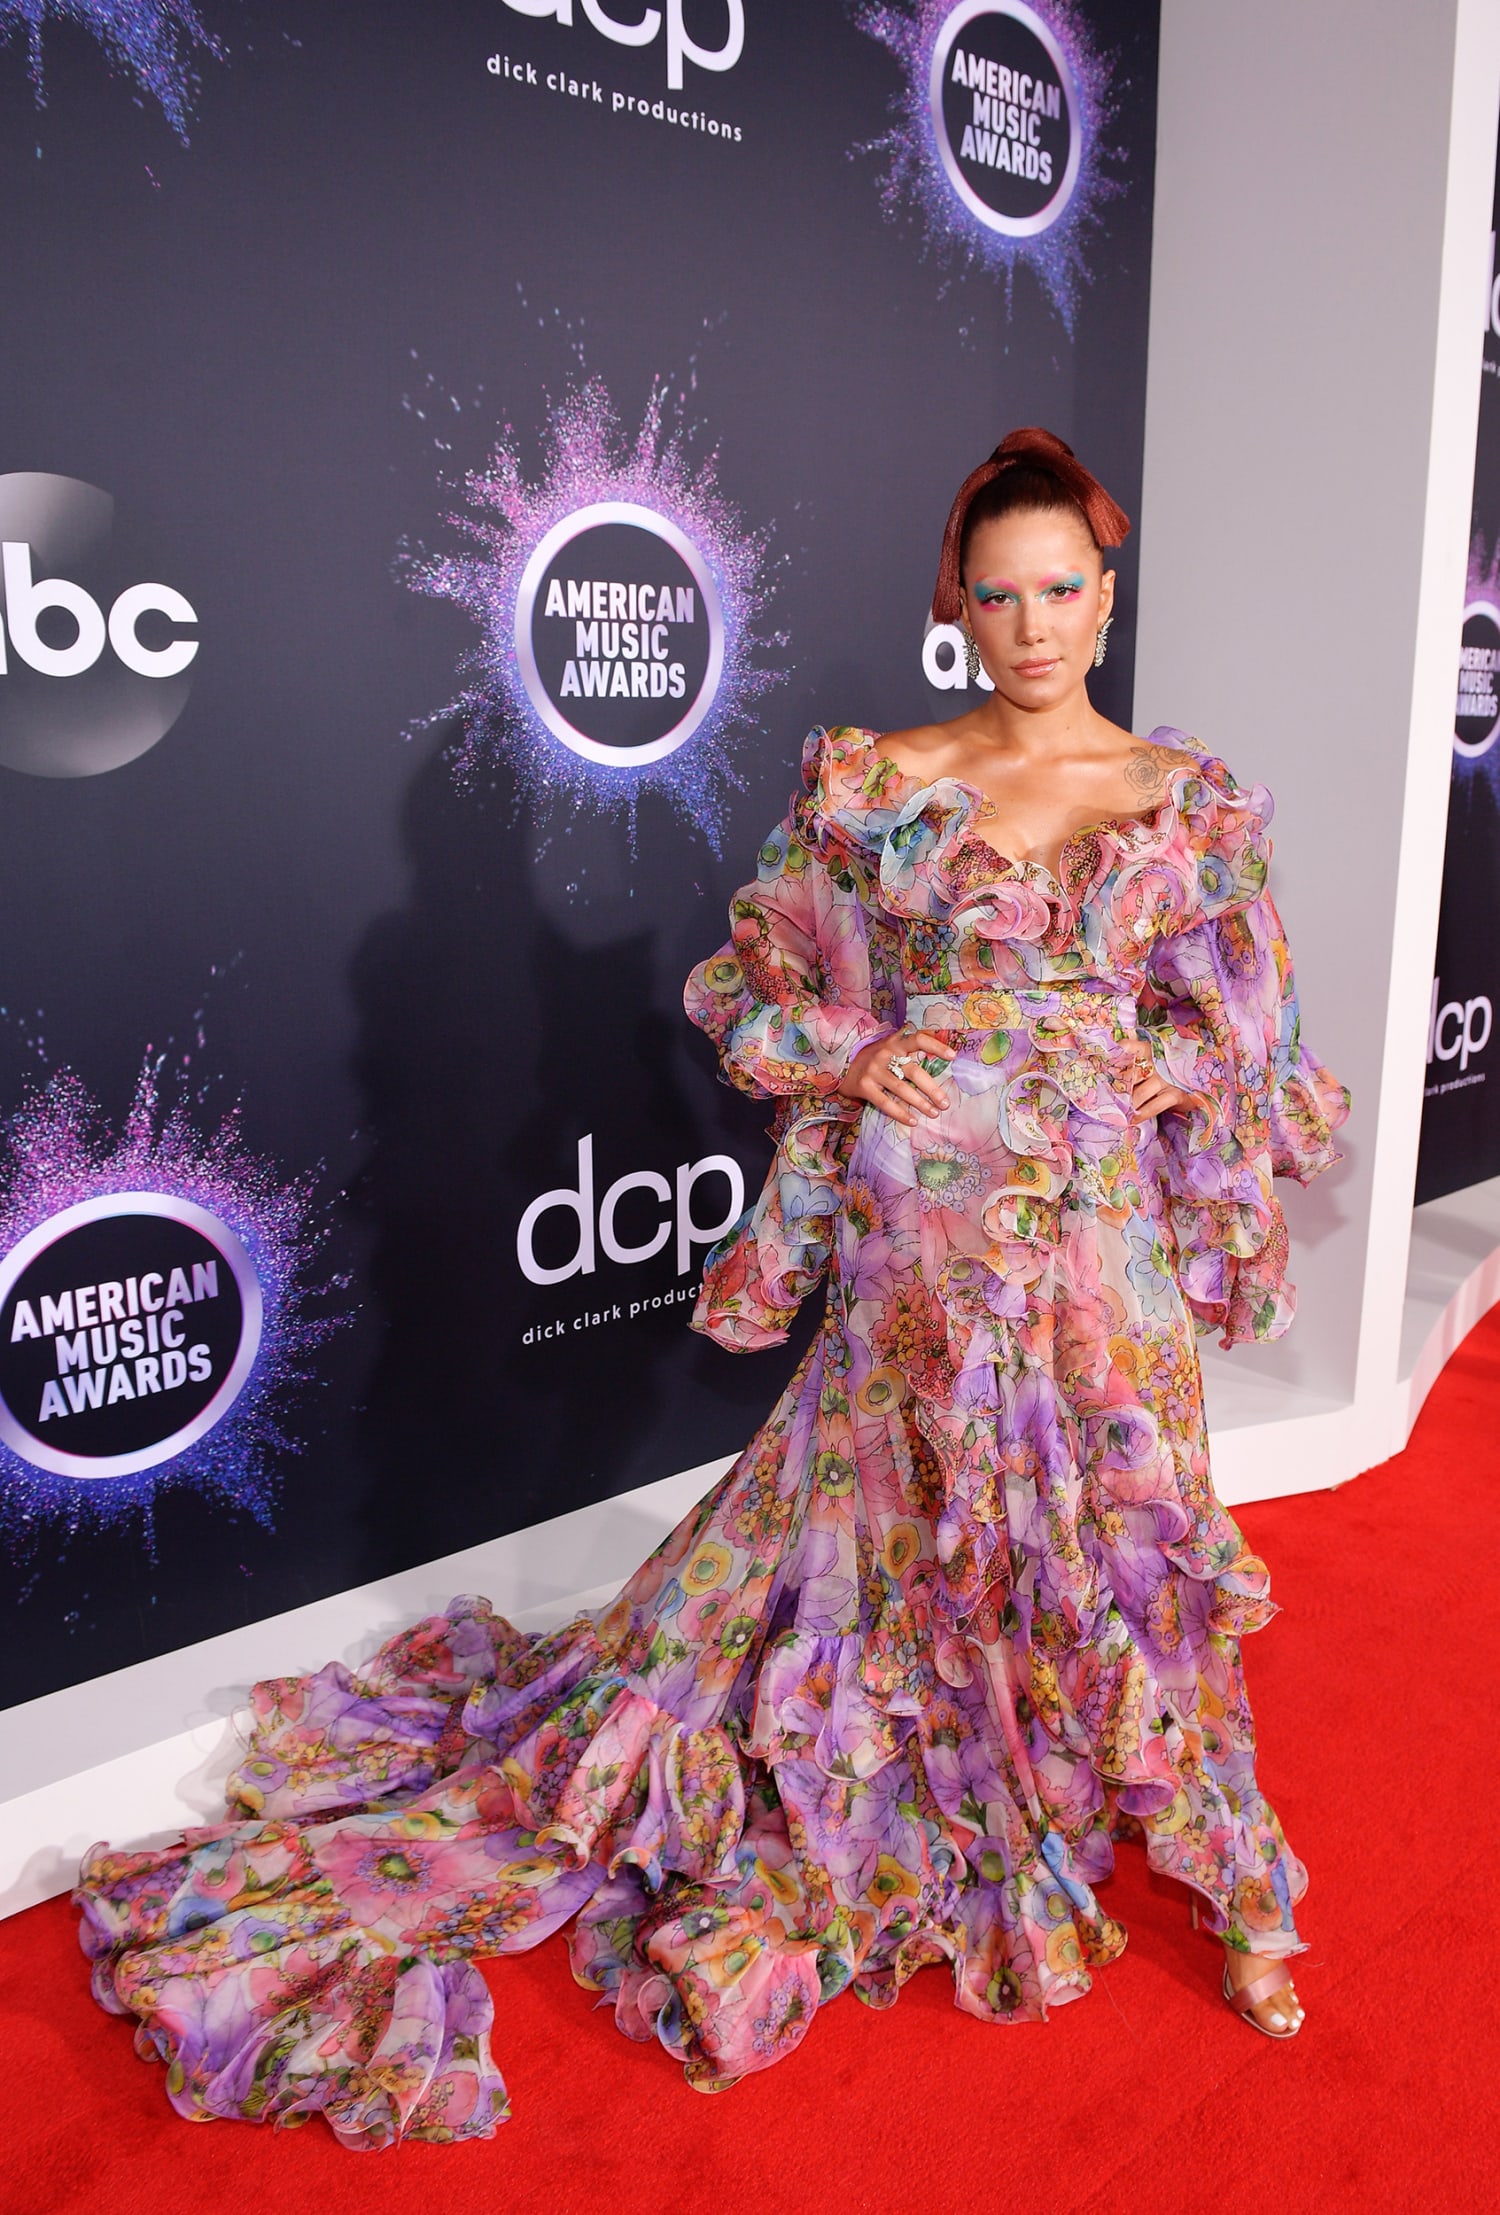 Carrie Underwood's AMAs 2019 Look: Wears a Shiny Purple Dress